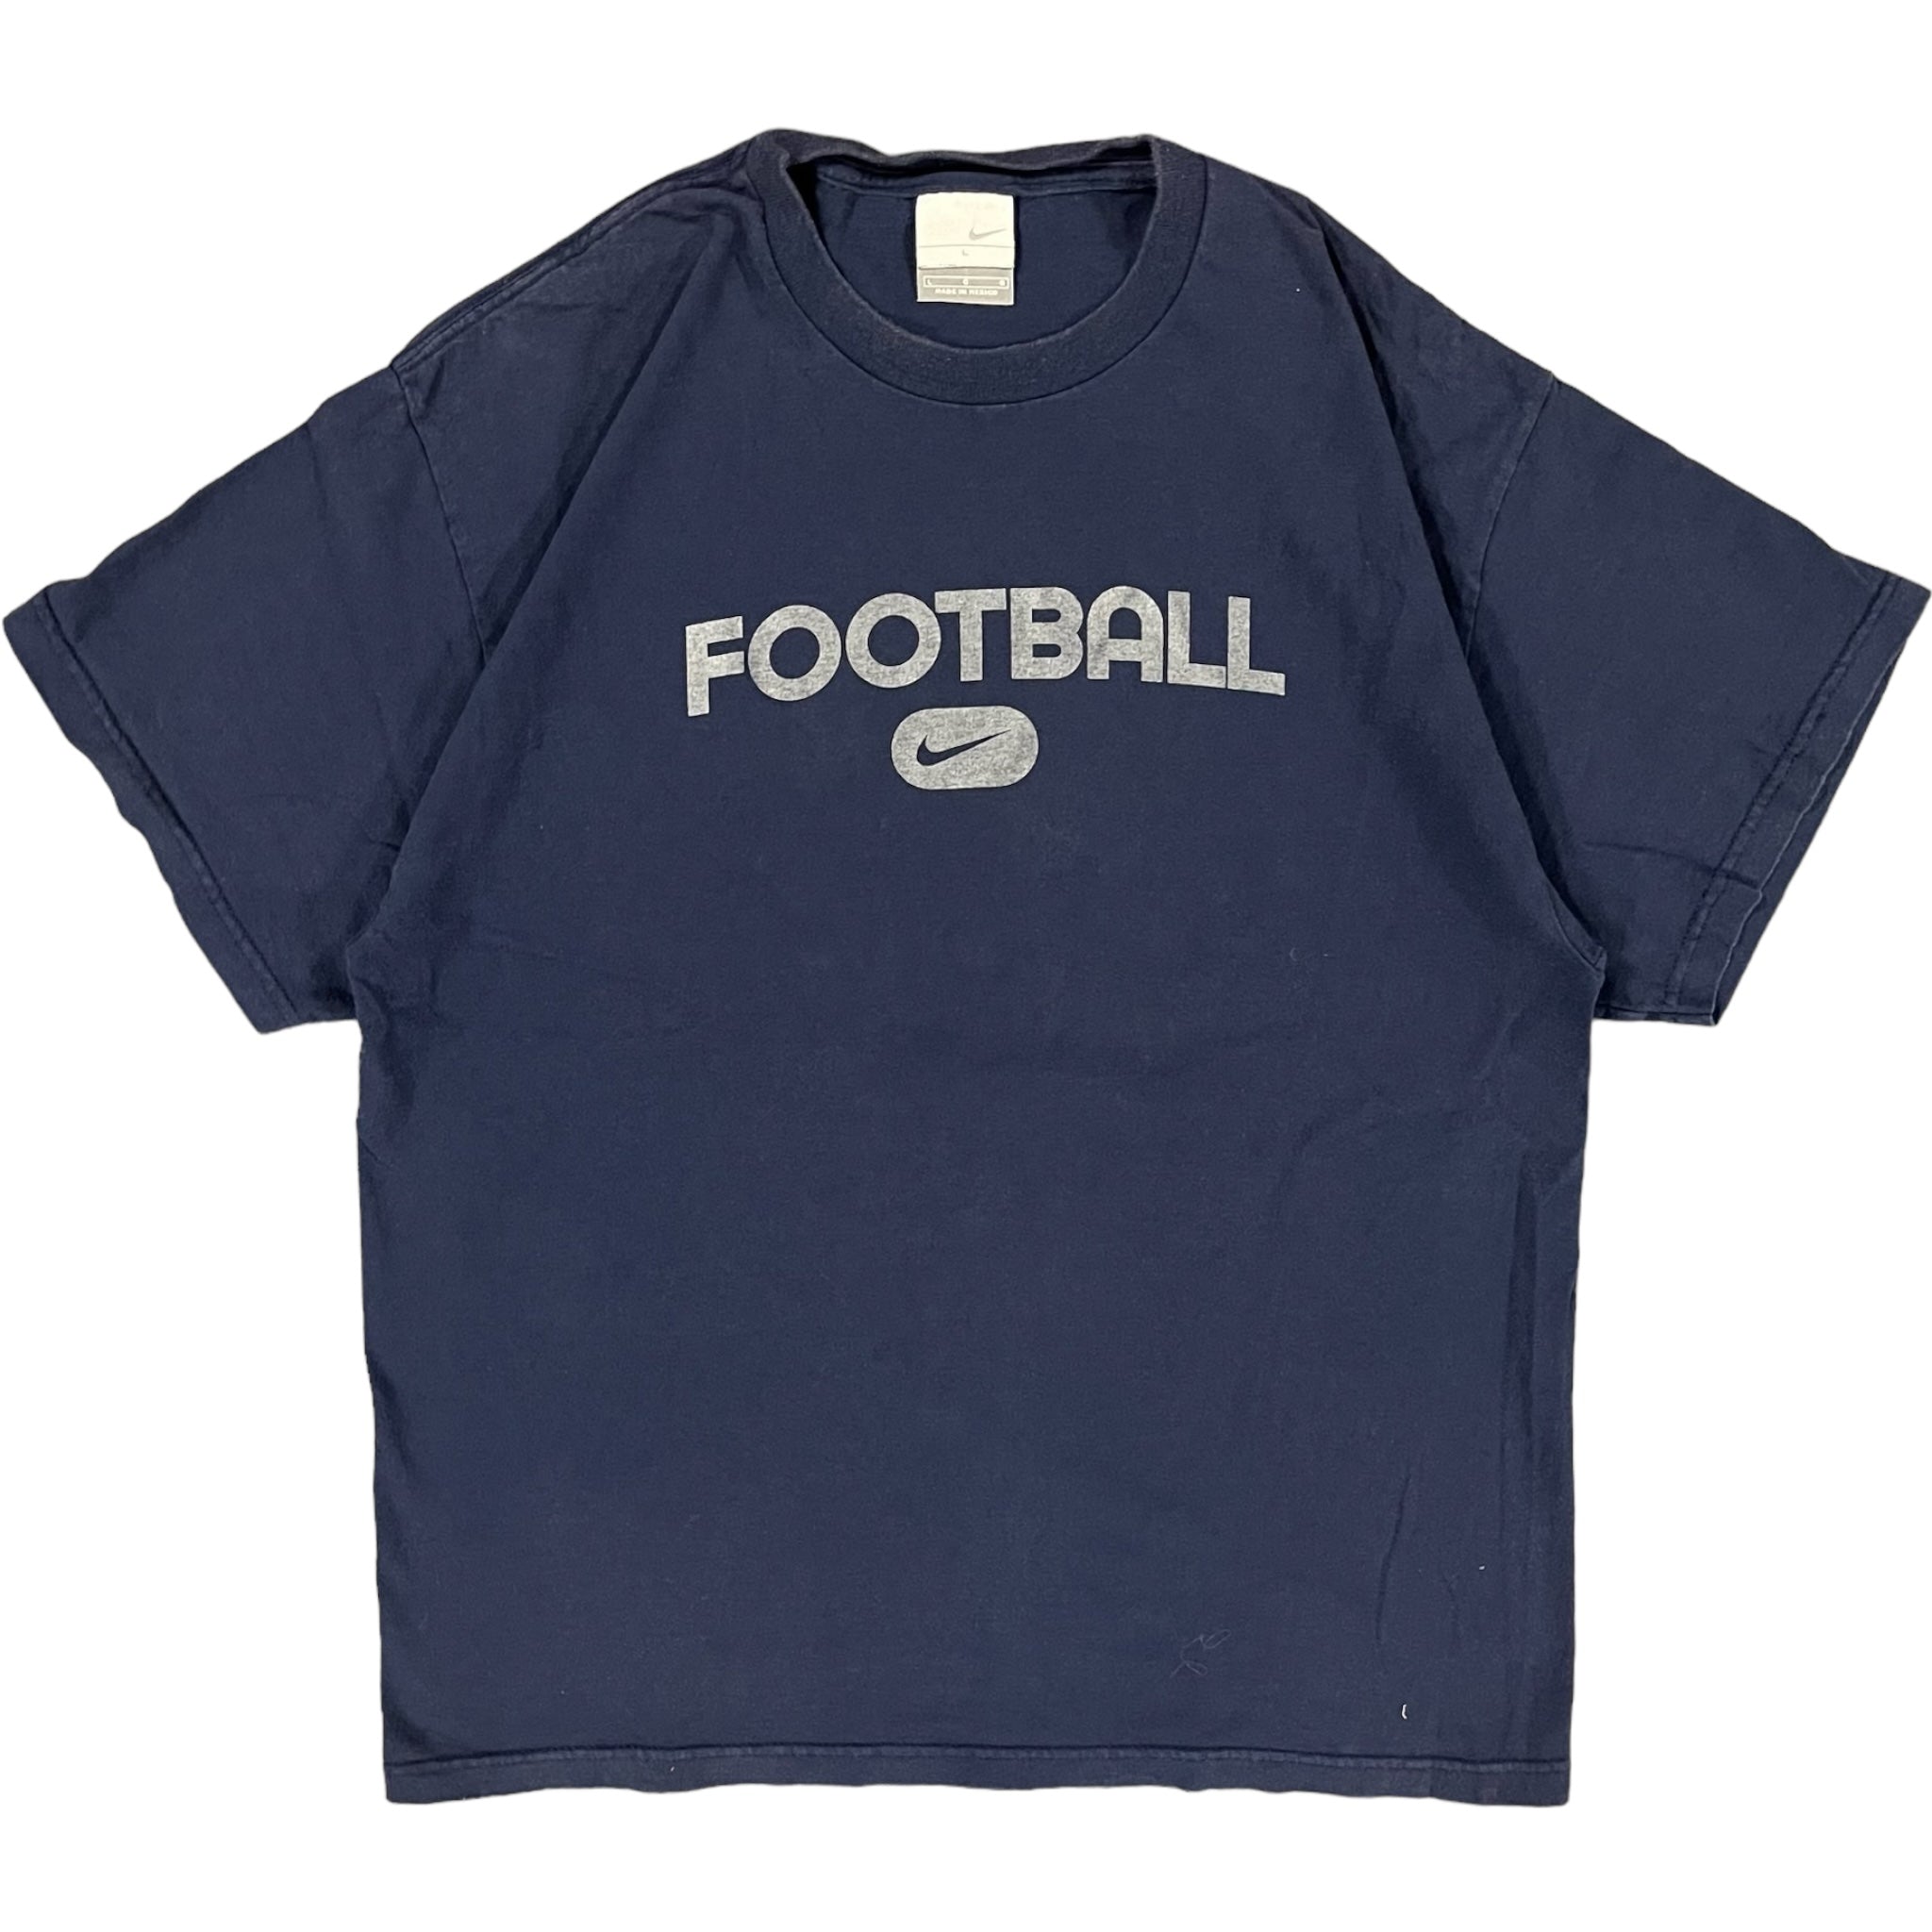 Vintage Nike "Football" Tee